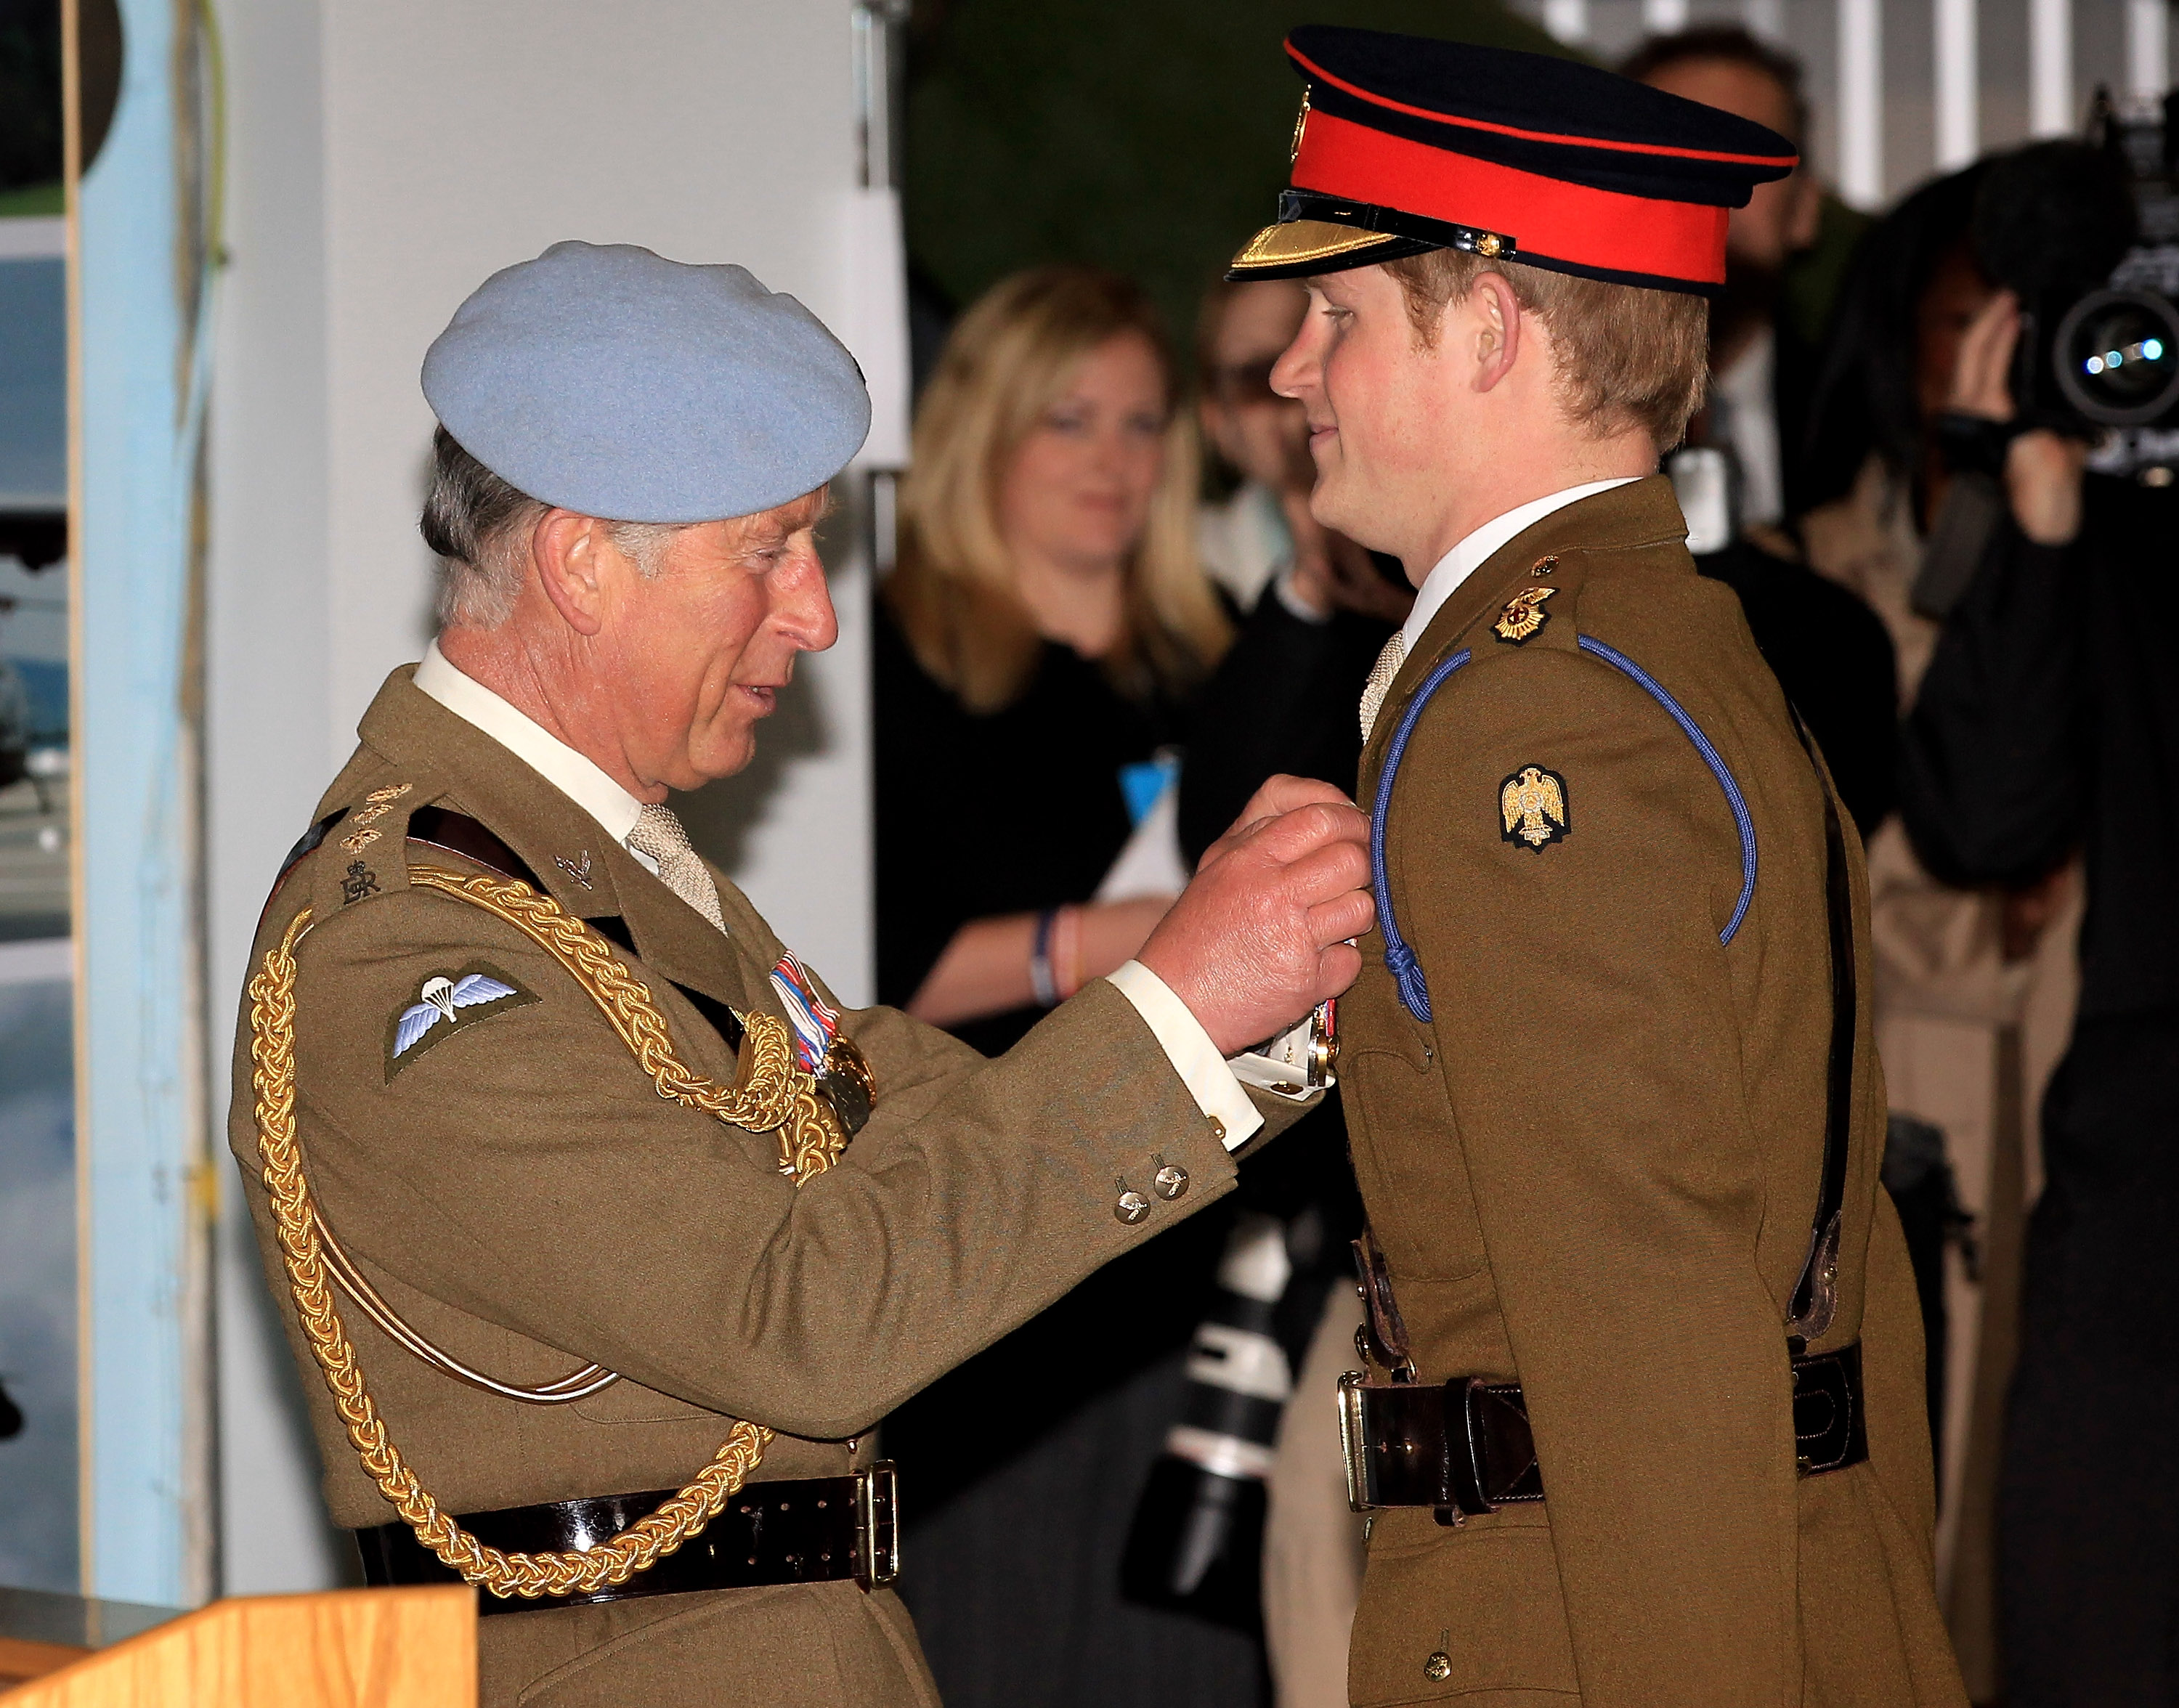 Le prince Charles remet à son fils, le prince Harry, ses ailes de pilote lors de la remise des diplômes du cours de pilotage du prince Harry au centre d'aviation de l'armée, le 7 mai 2010 à Andover, en Angleterre | Source : Getty Images